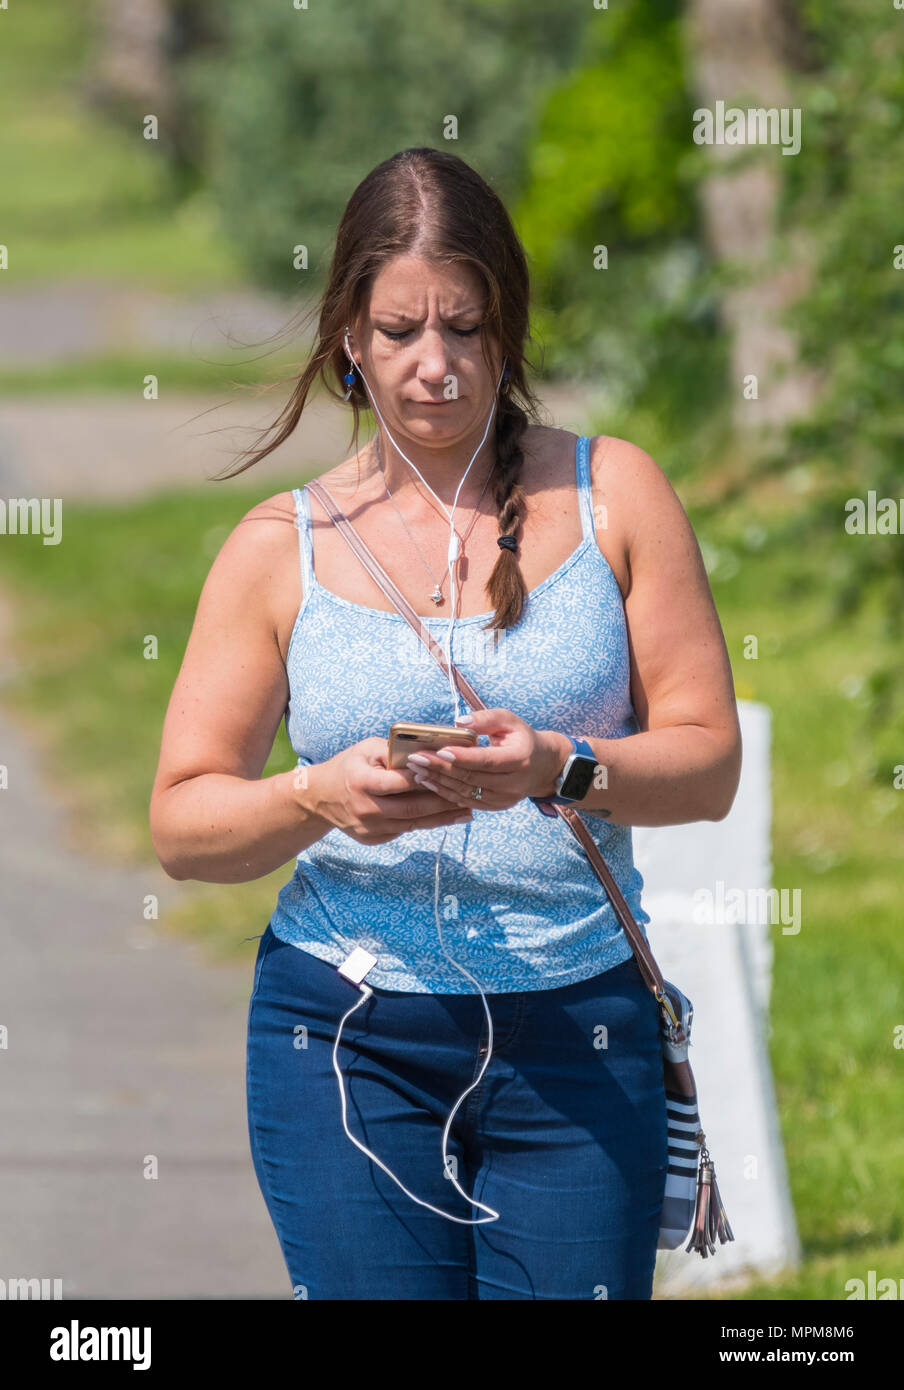 Giovane donna camminare guardando verso il basso in corrispondenza di un telefono e anche l'ascolto di musica con cuffie intrauricolari, in una calda giornata estiva nel Regno Unito. Rivolta verso il lato anteriore. Foto Stock